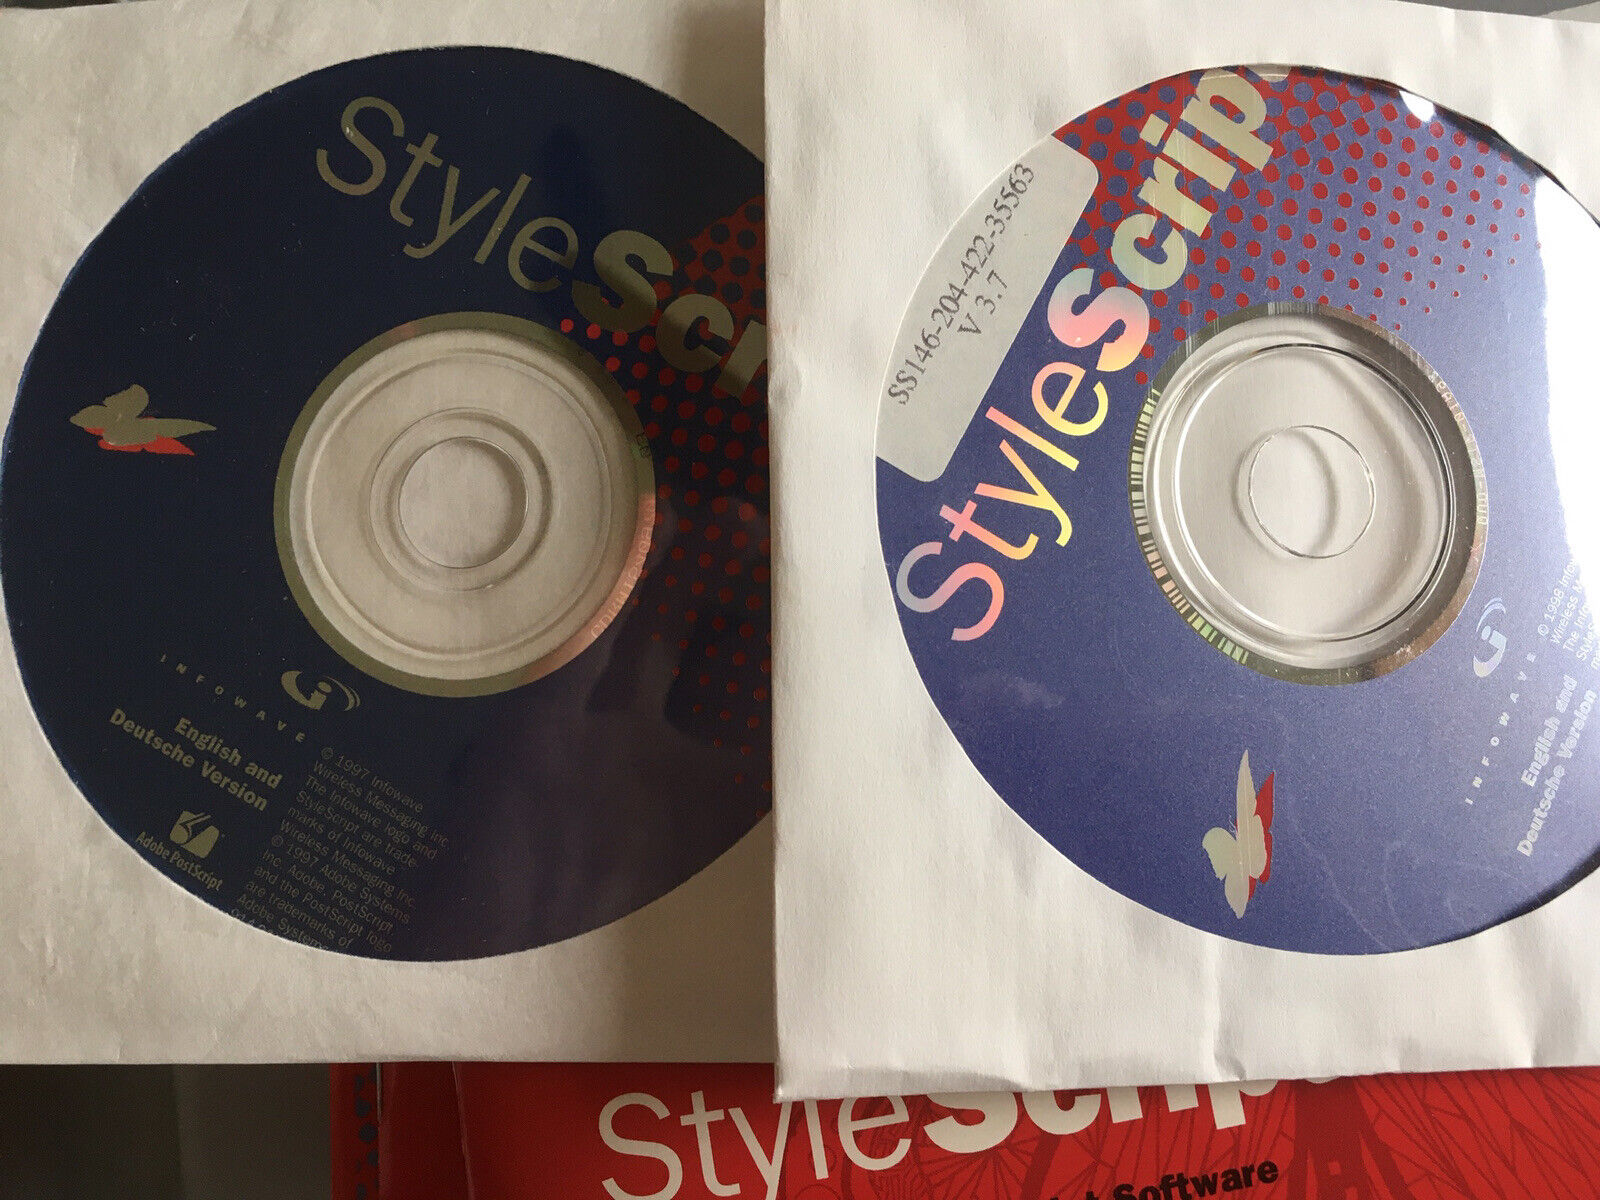 Stylescript style script software Mac OS Adobe Postscript Inkjet Vintage CDs